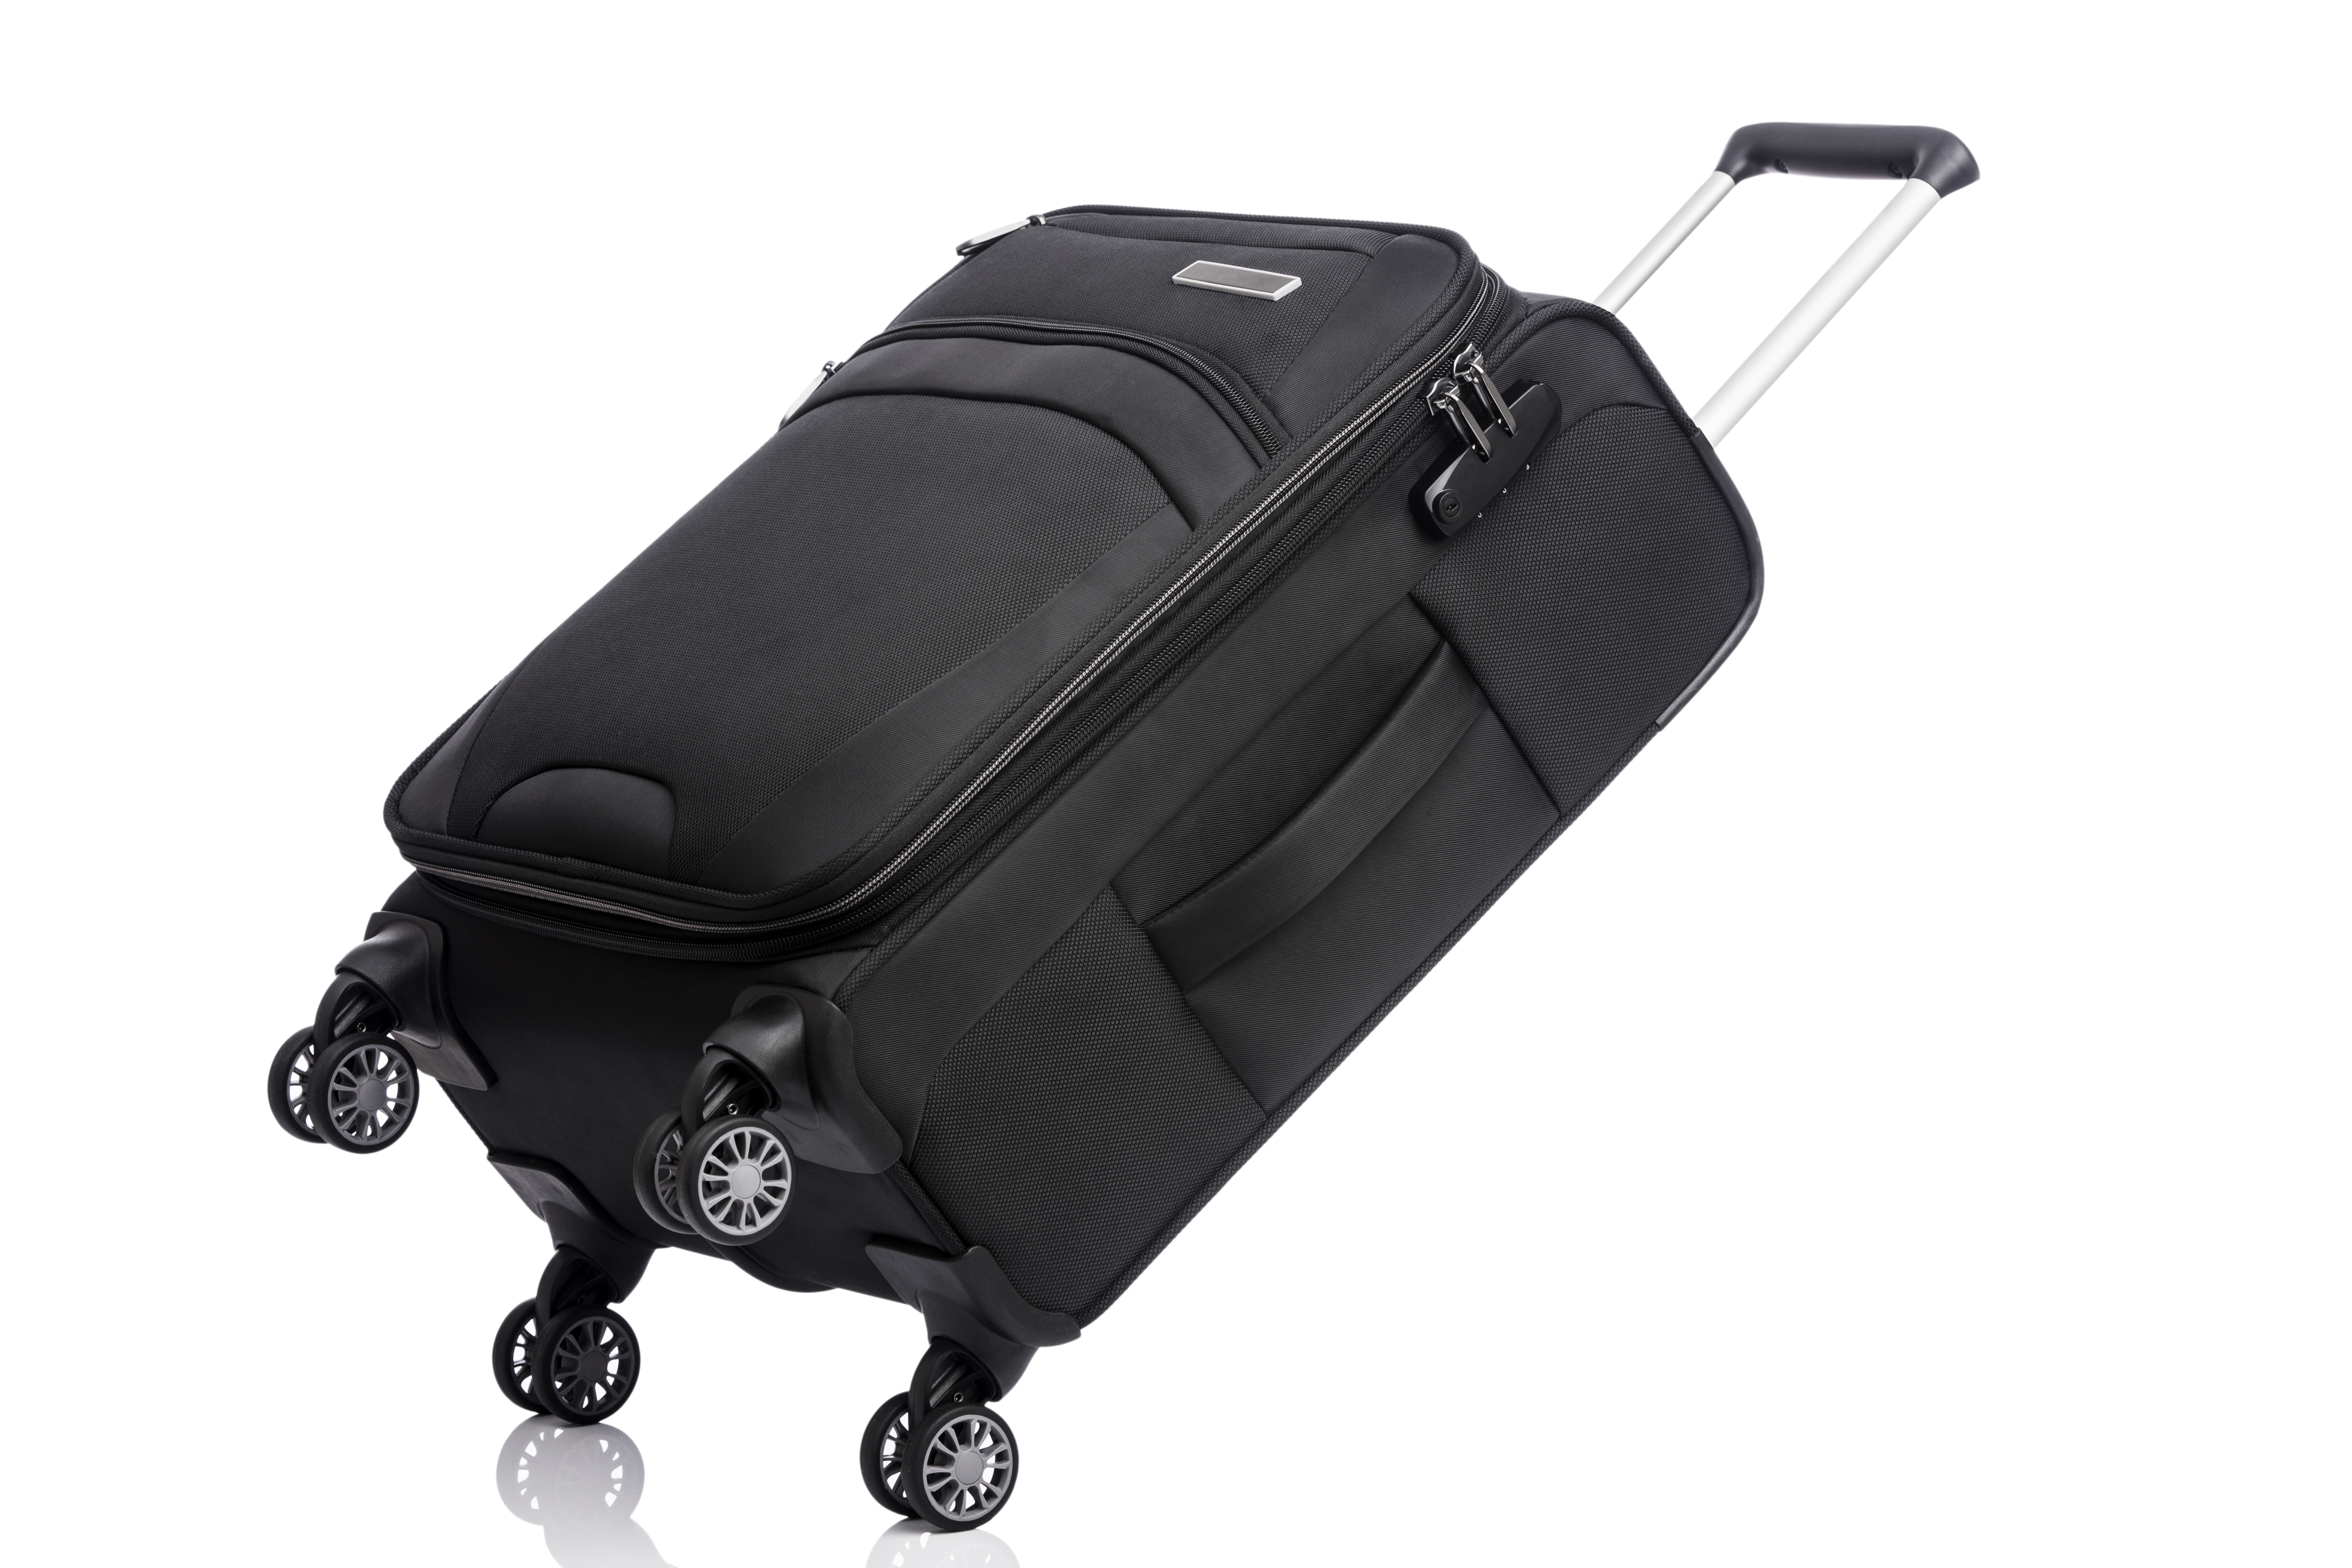 a black soft-side luggage